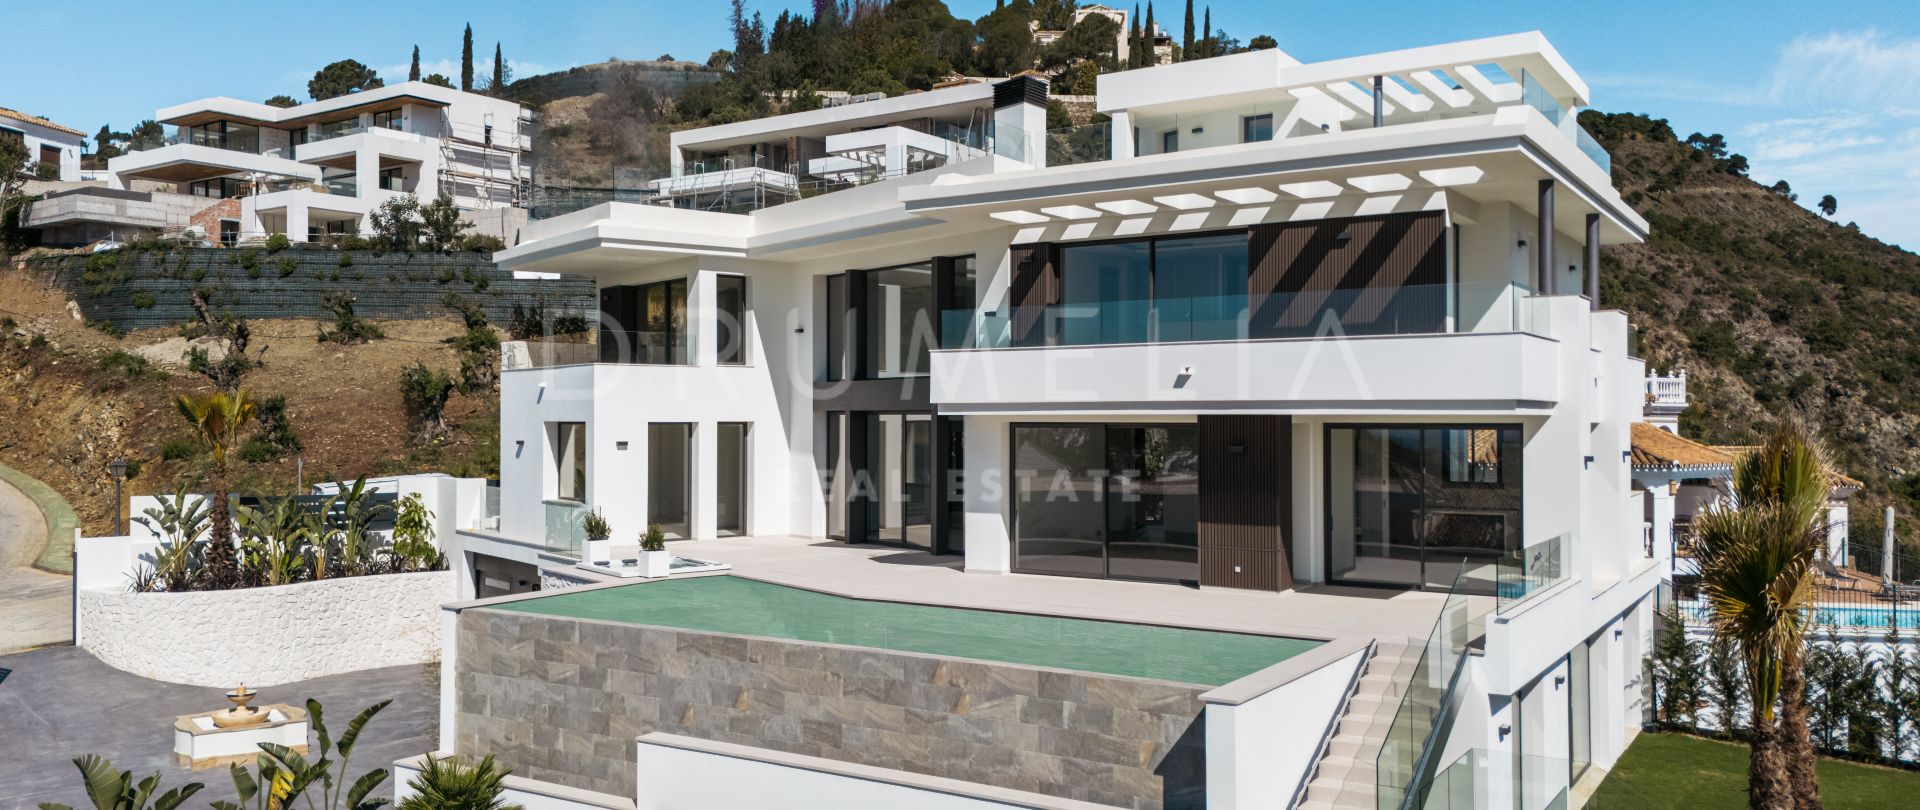 Lomas 10 - Moderna villa a estrenar en la prestigiosa Lomas de la Quinta, Marbella, con impresionantes vistas al mar y a la montaña